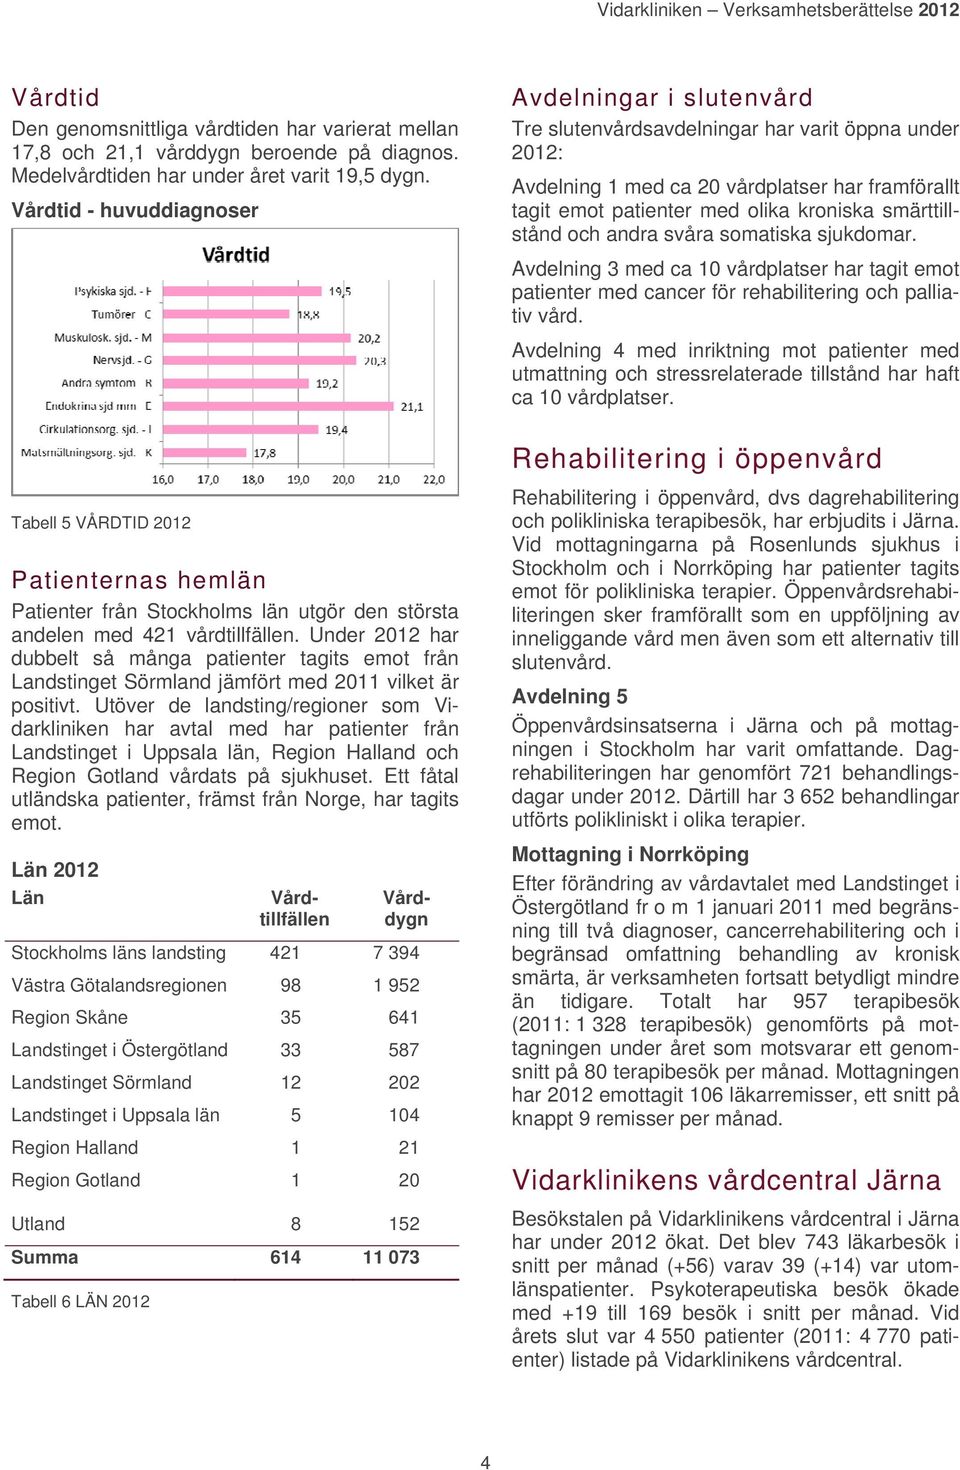 Under 2012 har dubbelt så många patienter tagits emot från Landstinget Sörmland jämfört med 2011 vilket är positivt.